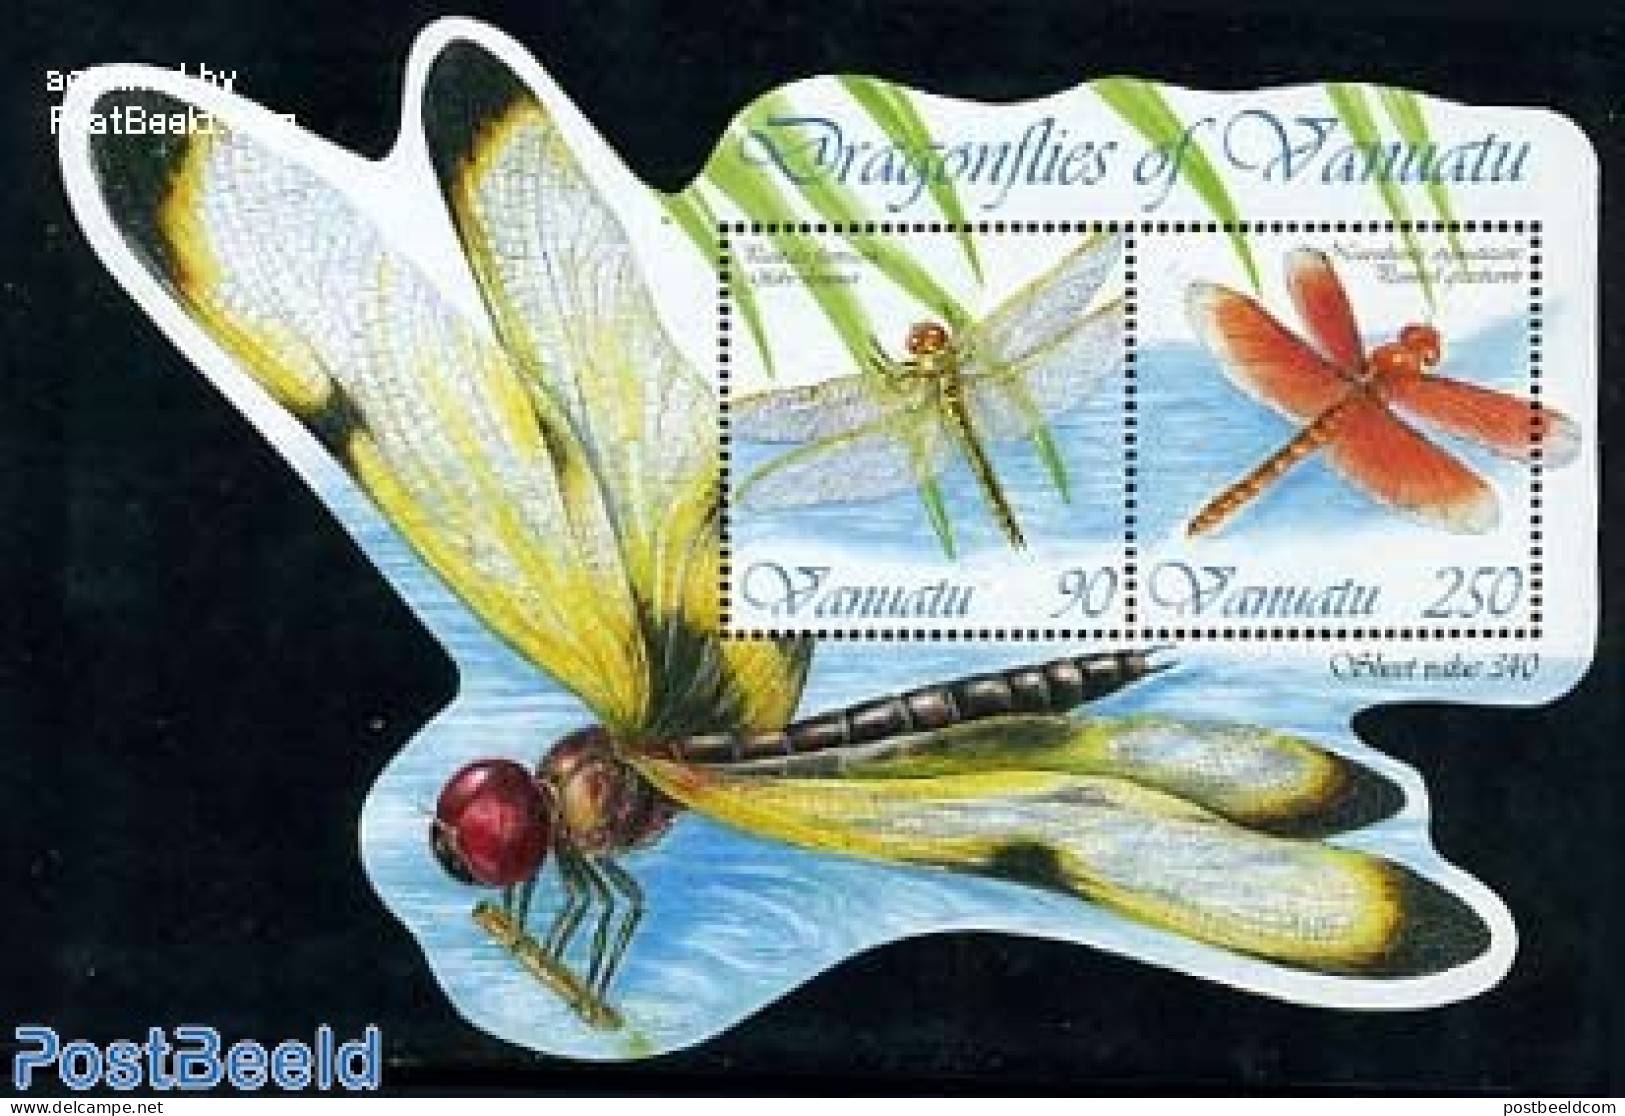 Vanuatu 2012 Dragonflies S/s, Mint NH, Nature - Insects - Vanuatu (1980-...)